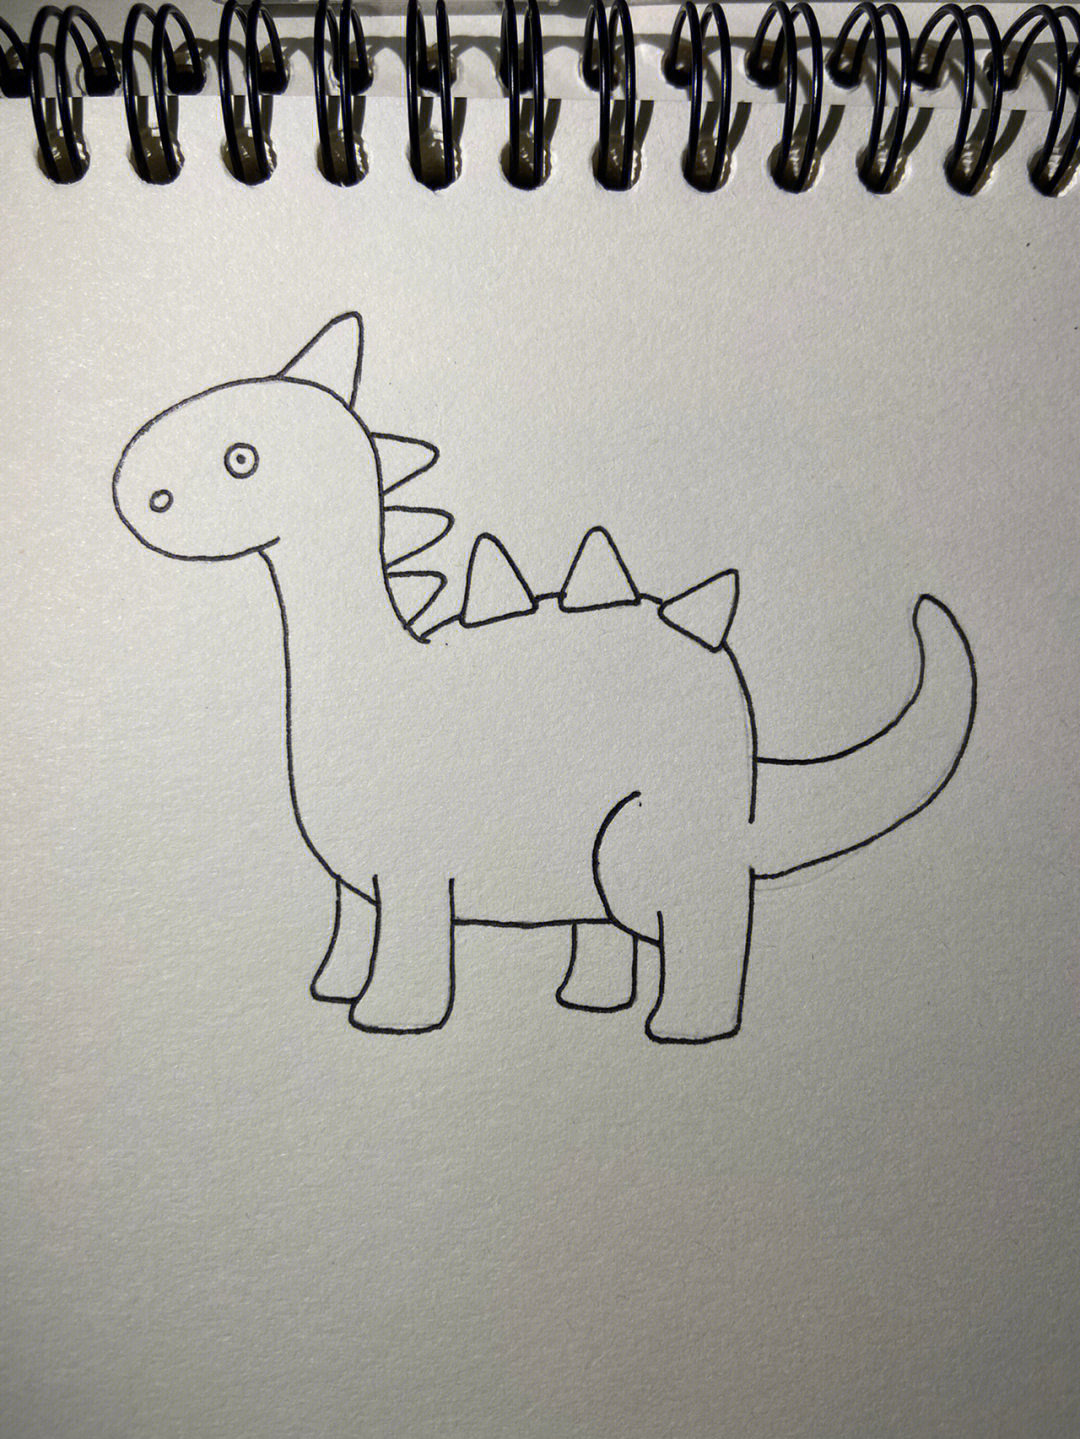 恐龙简易画法图片